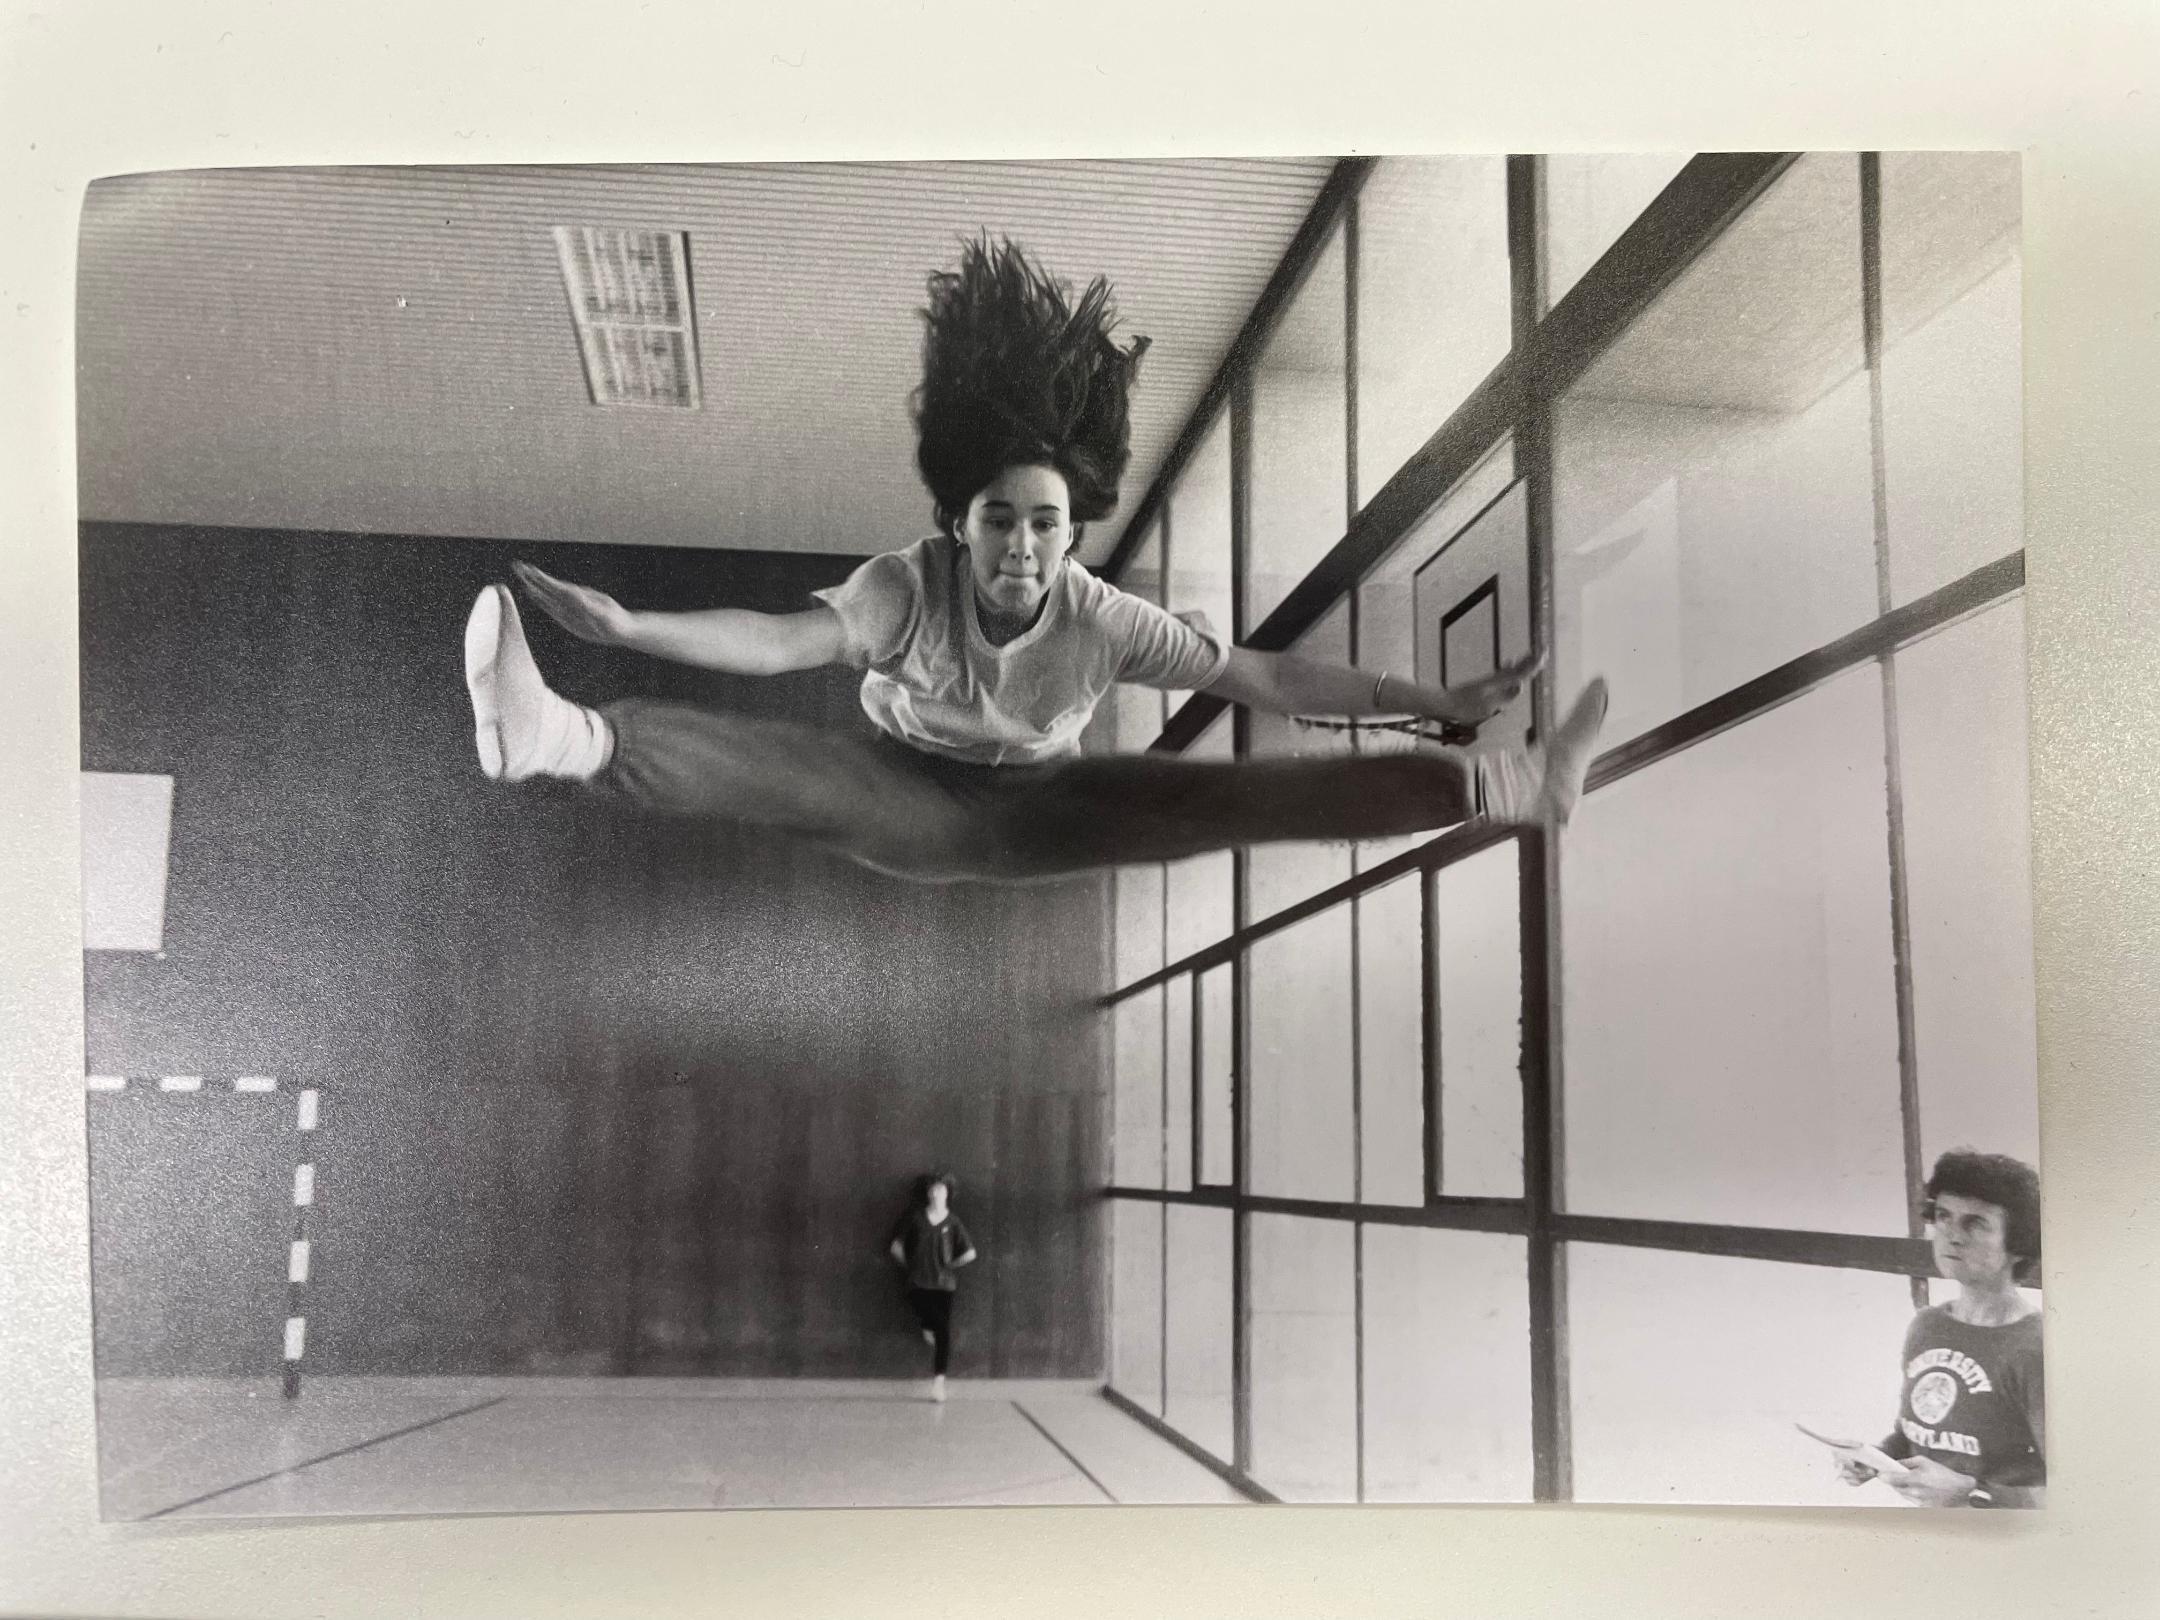 Schwarz-Weiss-Foto, dass in einer Turnhalle gemacht wurde und eine Jugendliche zeigt, die einen Grätschsprung macht.